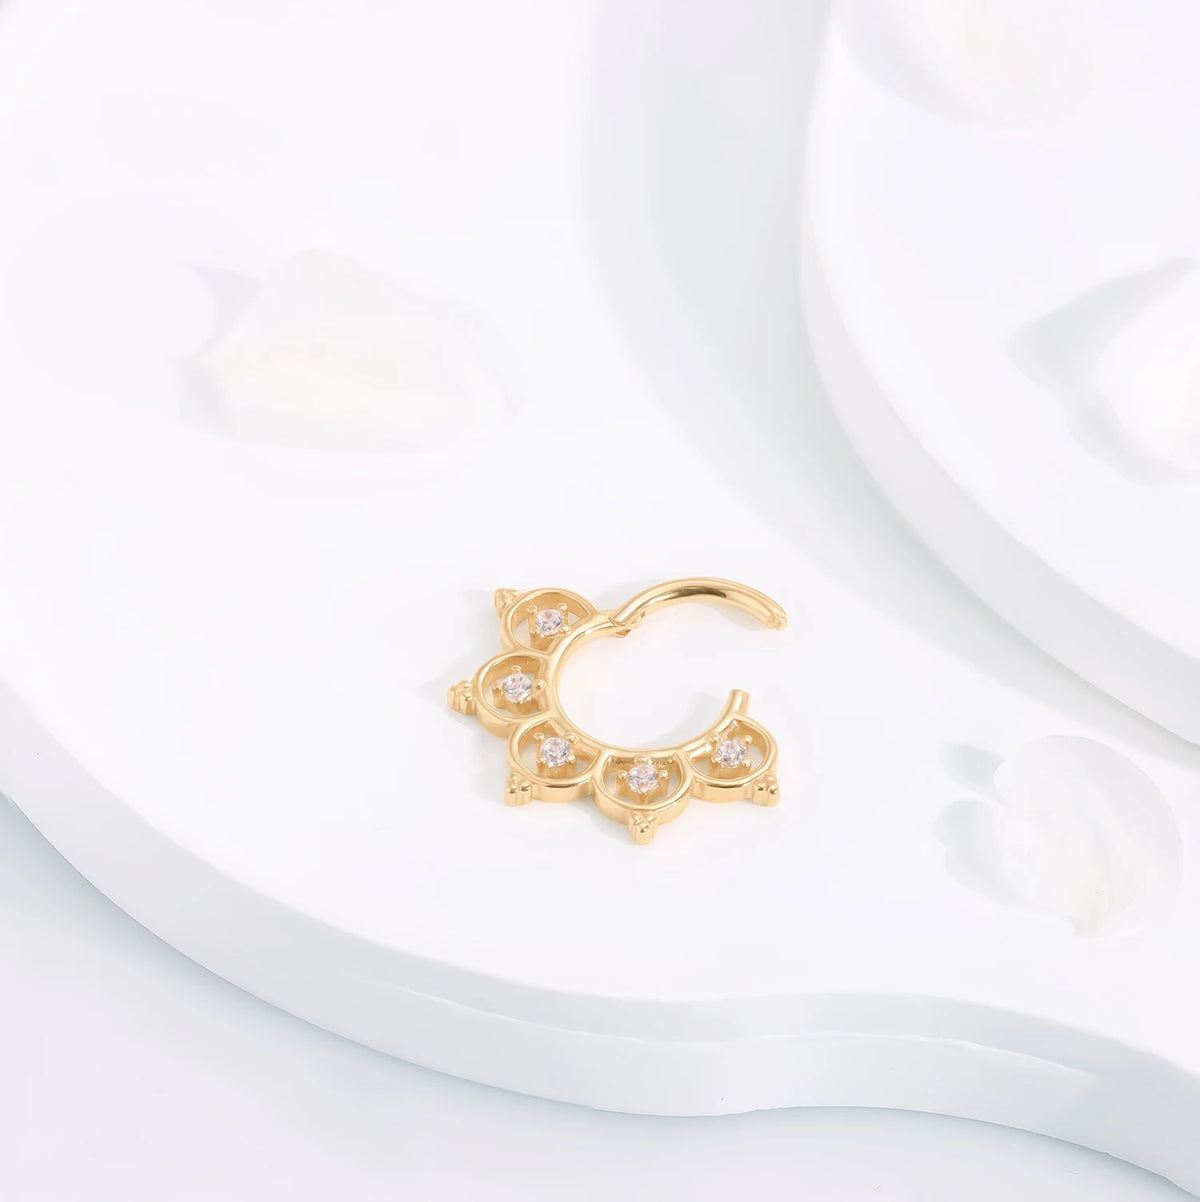 Septum-Clicker aus 14 Karat Gold, sehr ausgefallener und einzigartiger Daith-Ohrring, aufklappbarer Segment-Clicker-Ring, Nasenring